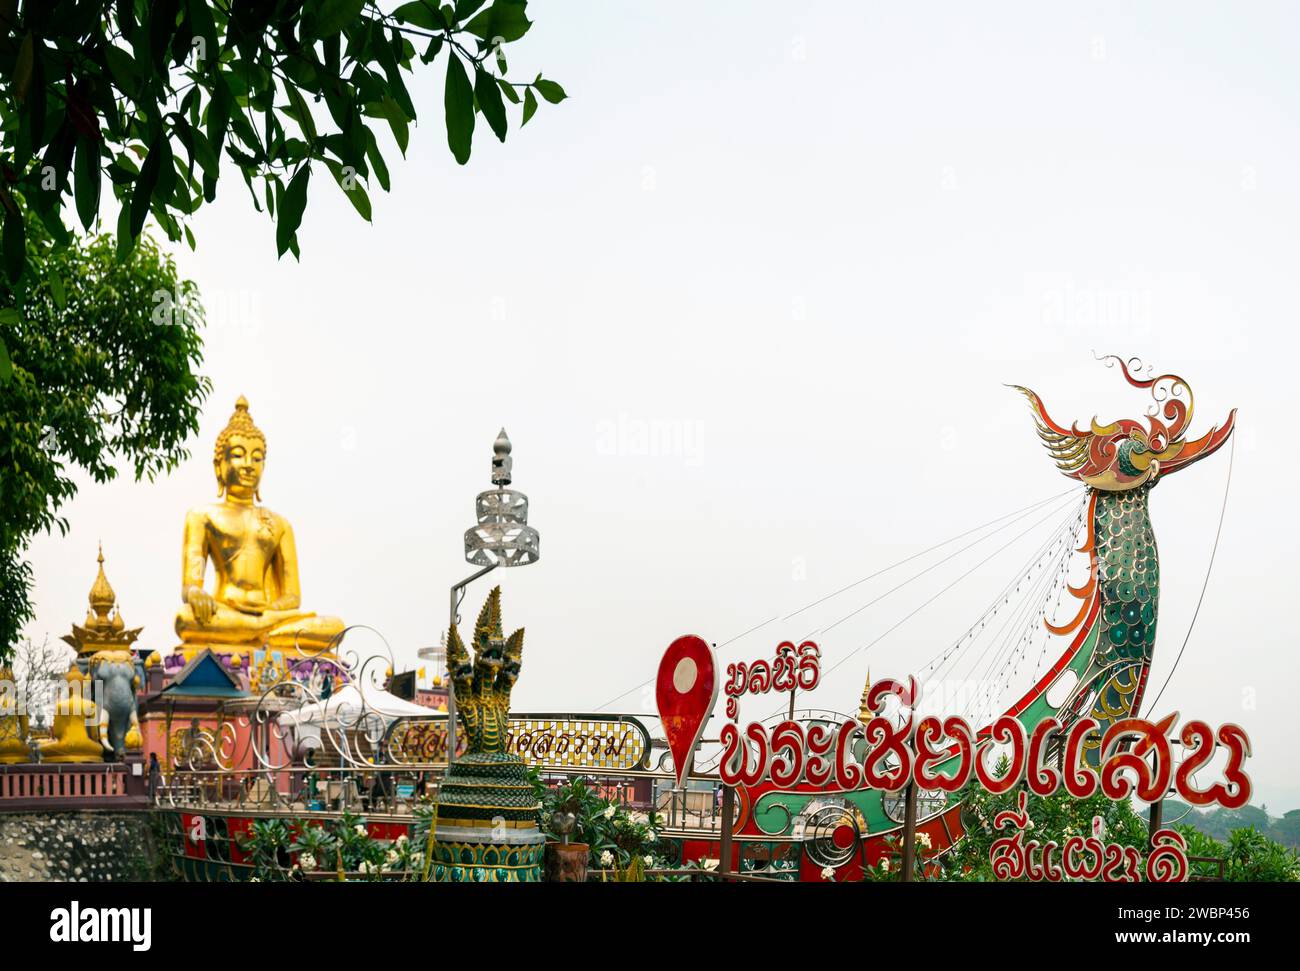 Un popolare antico santuario buddista religioso e un'attrazione turistica presso il punto d'incontro tra i confini di Thailandia, Myanmar e Laos e la confluenza del Foto Stock